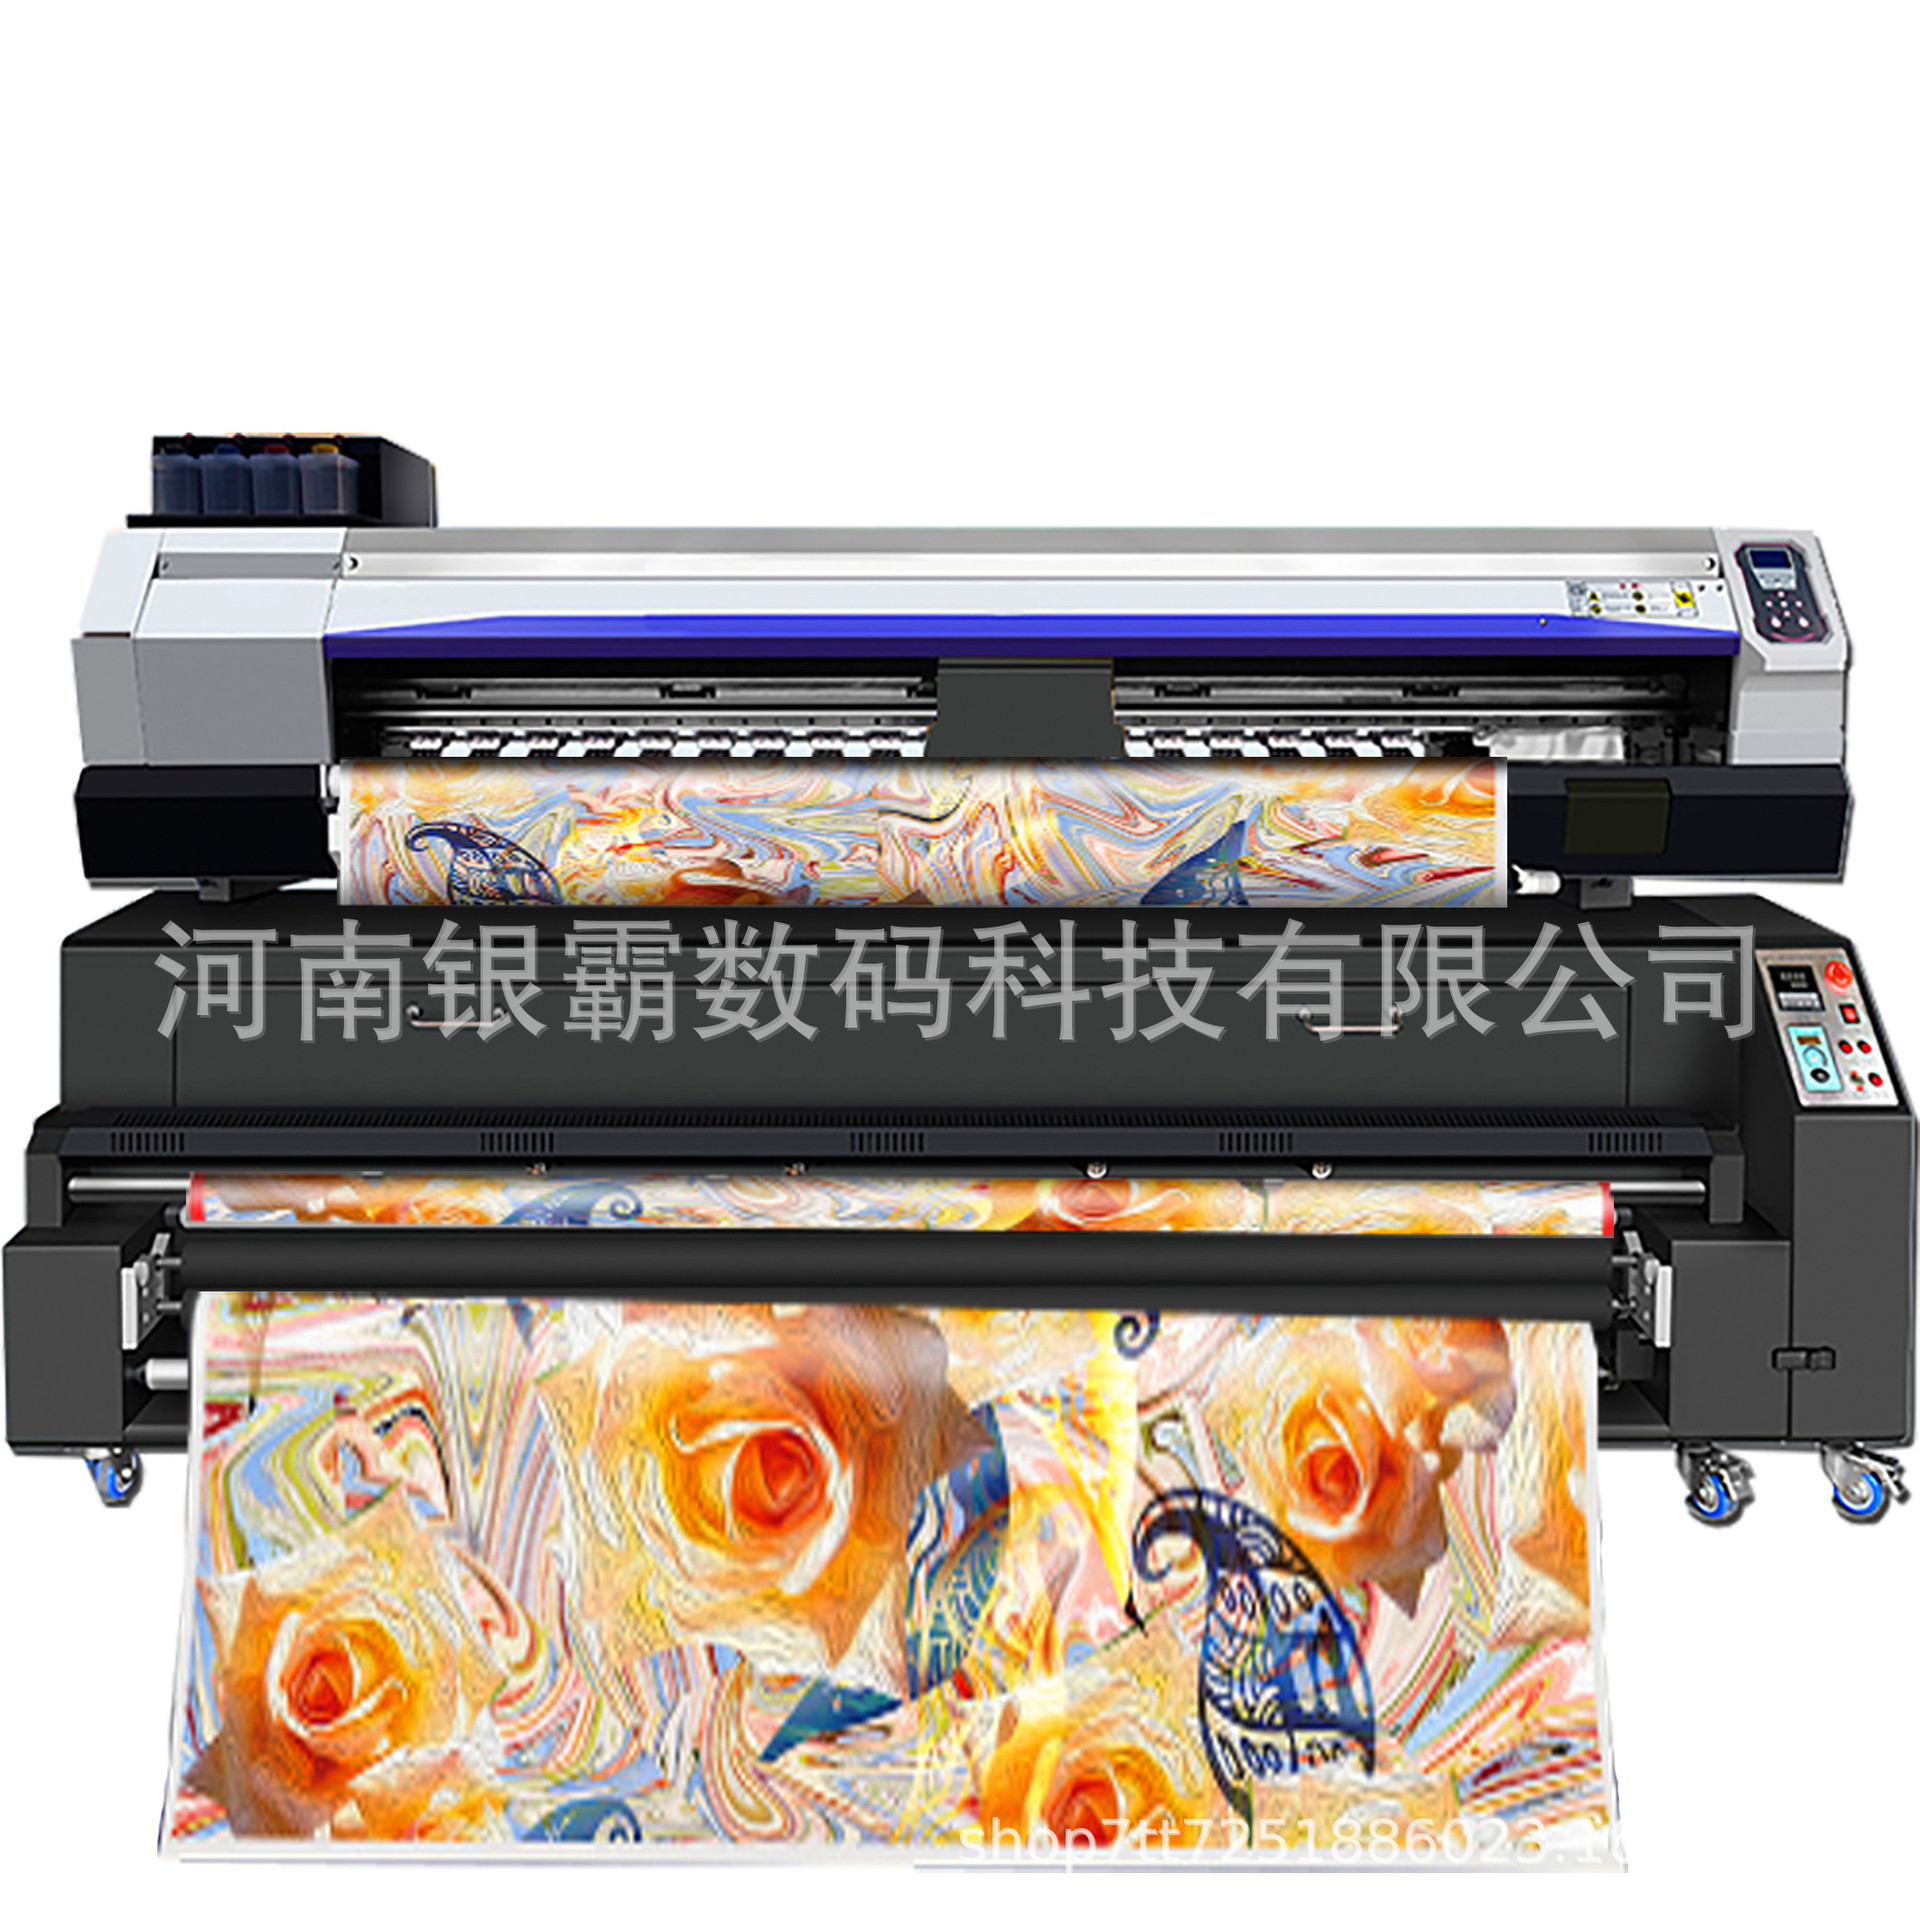 卷对卷数码印花机热升华印花机高速批量生产设备喷墨数码印花机